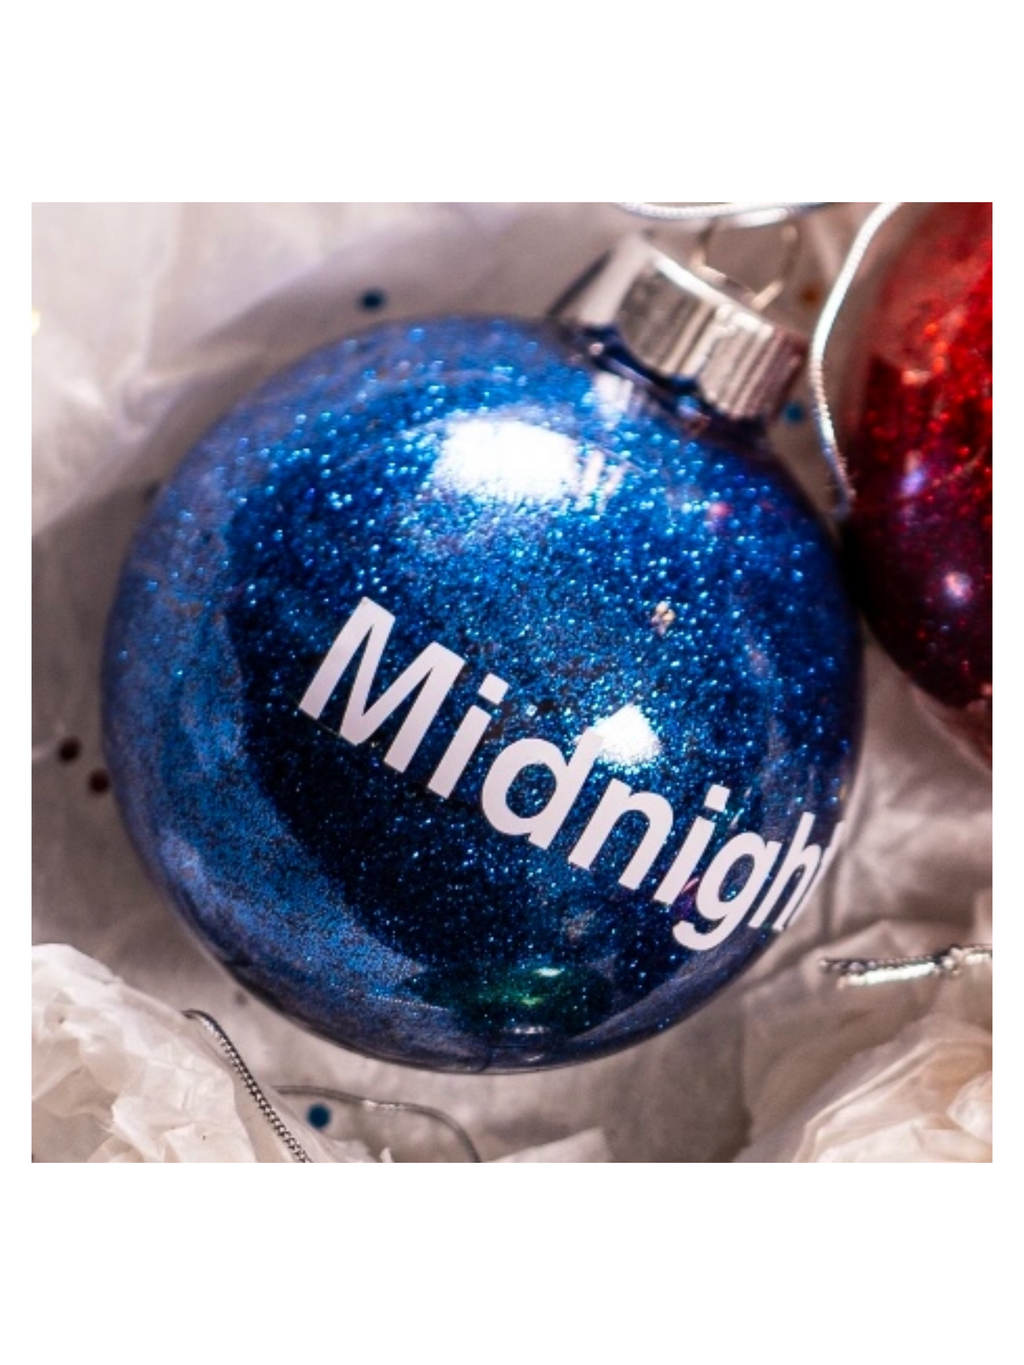 Midnights ornament